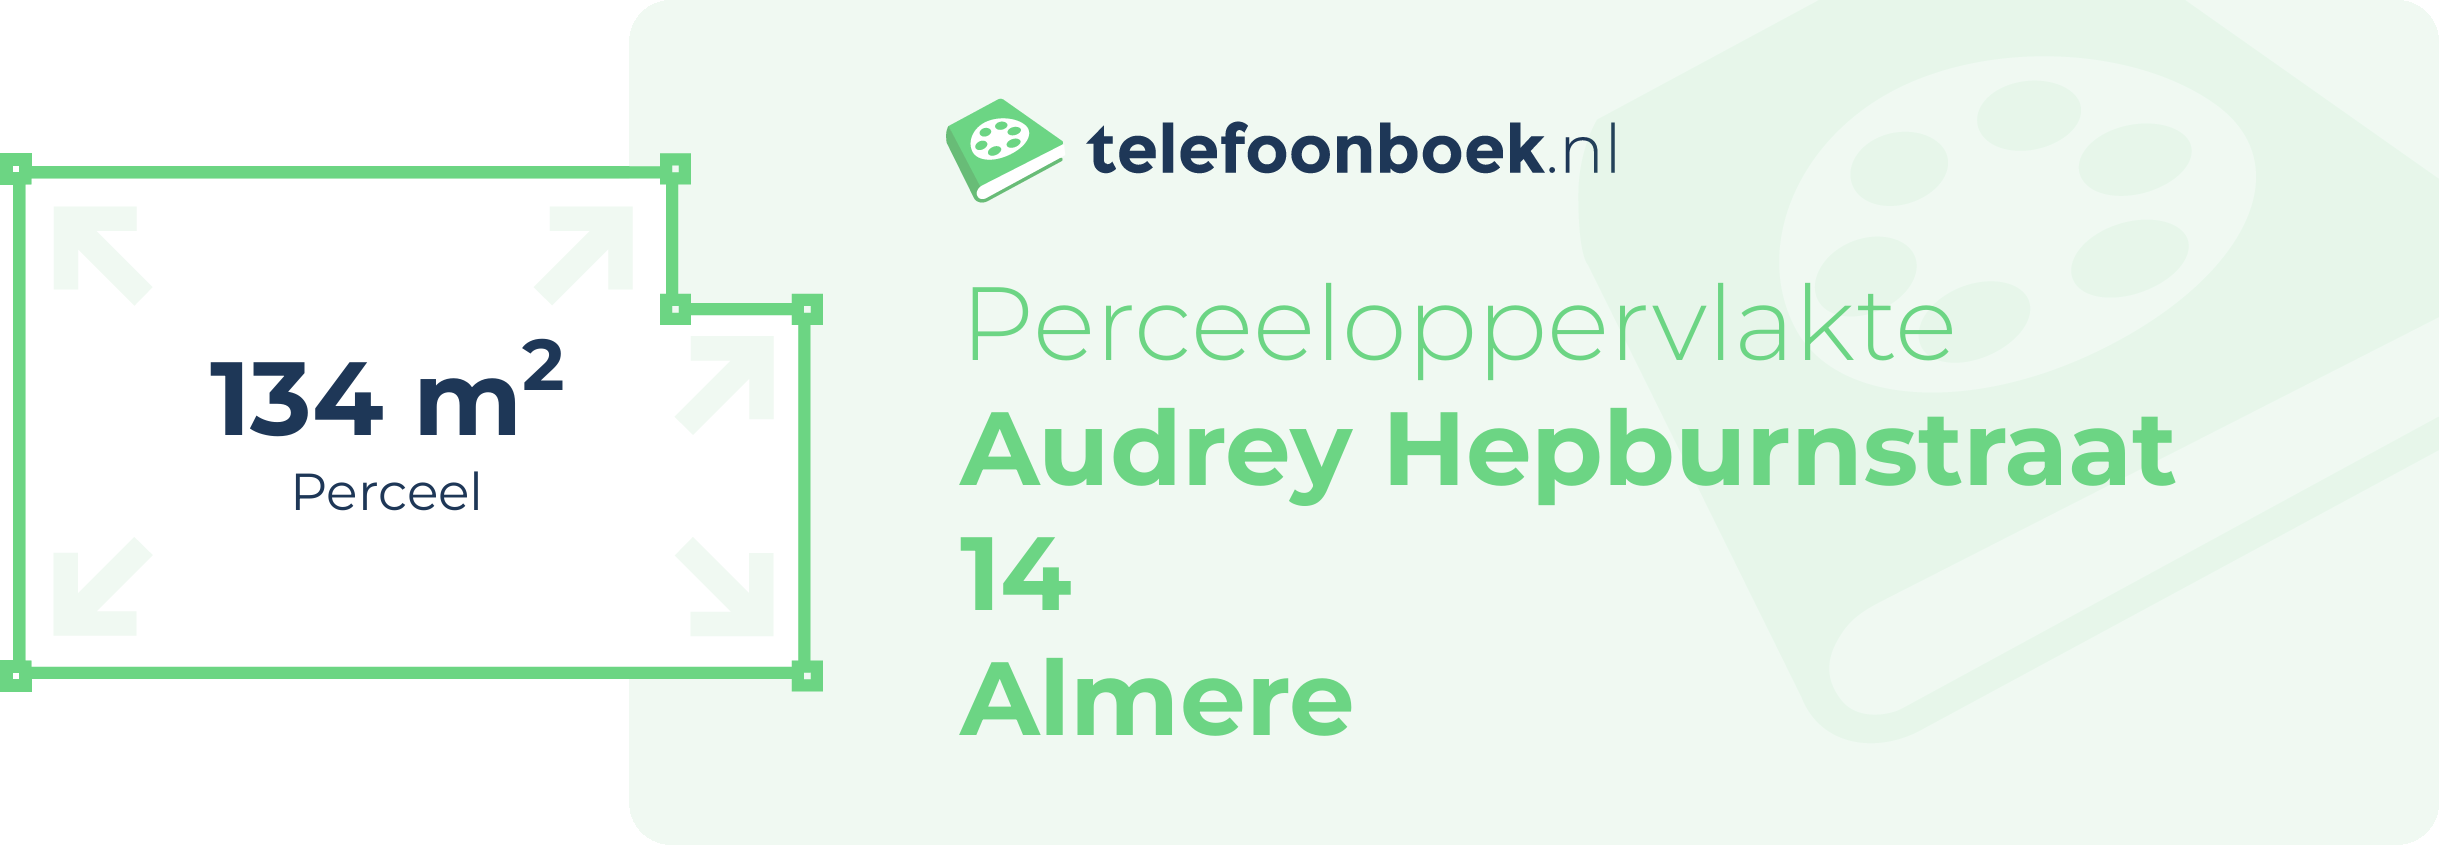 Perceeloppervlakte Audrey Hepburnstraat 14 Almere